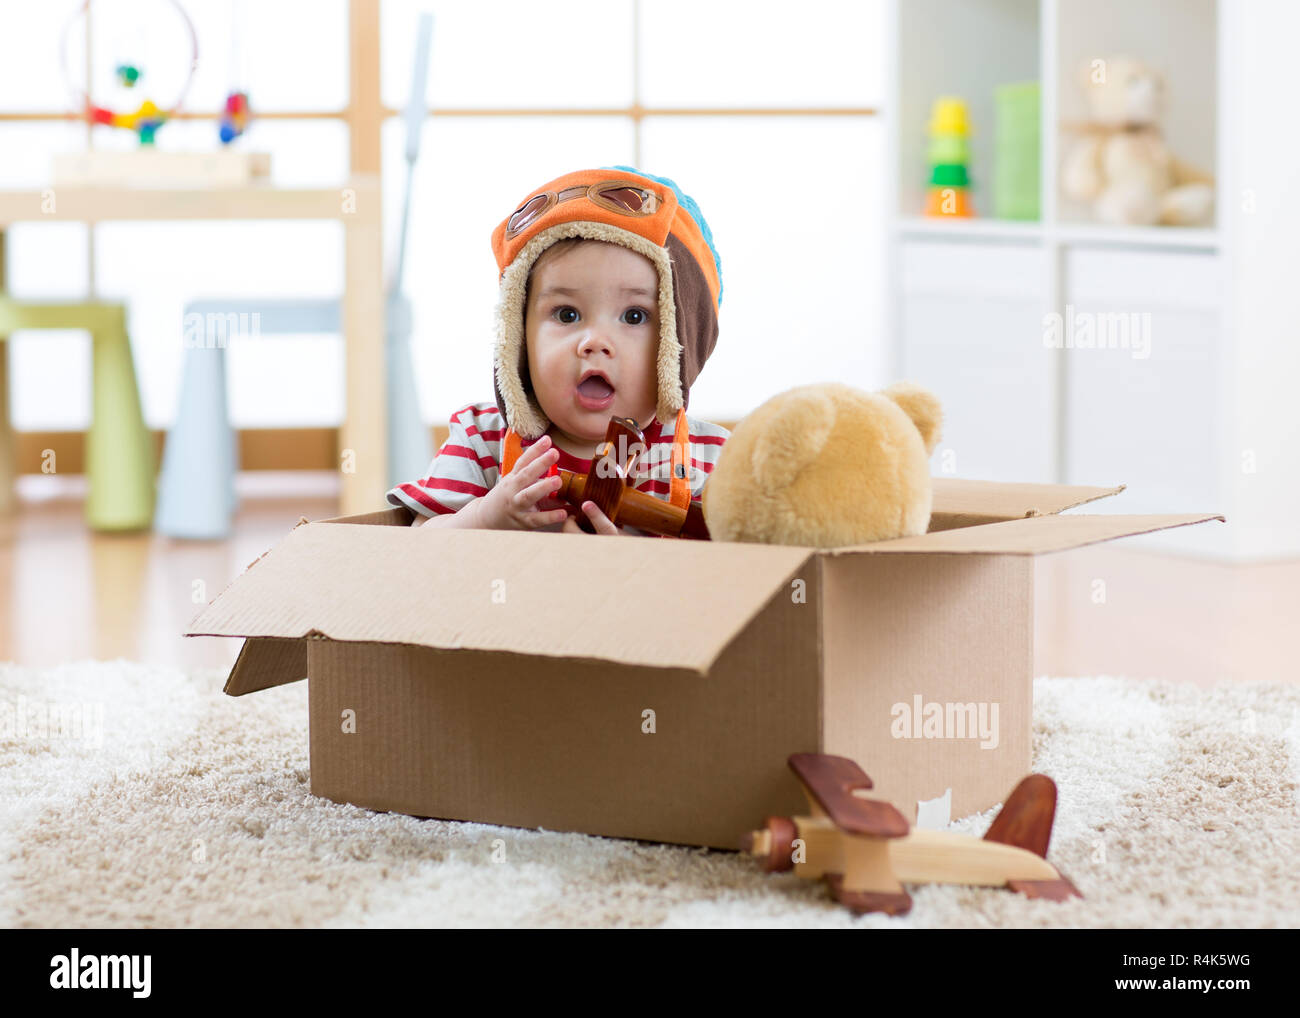 Aviatore pilota baby boy con Teddy bear toy e piani svolge in scatola di cartone Foto Stock